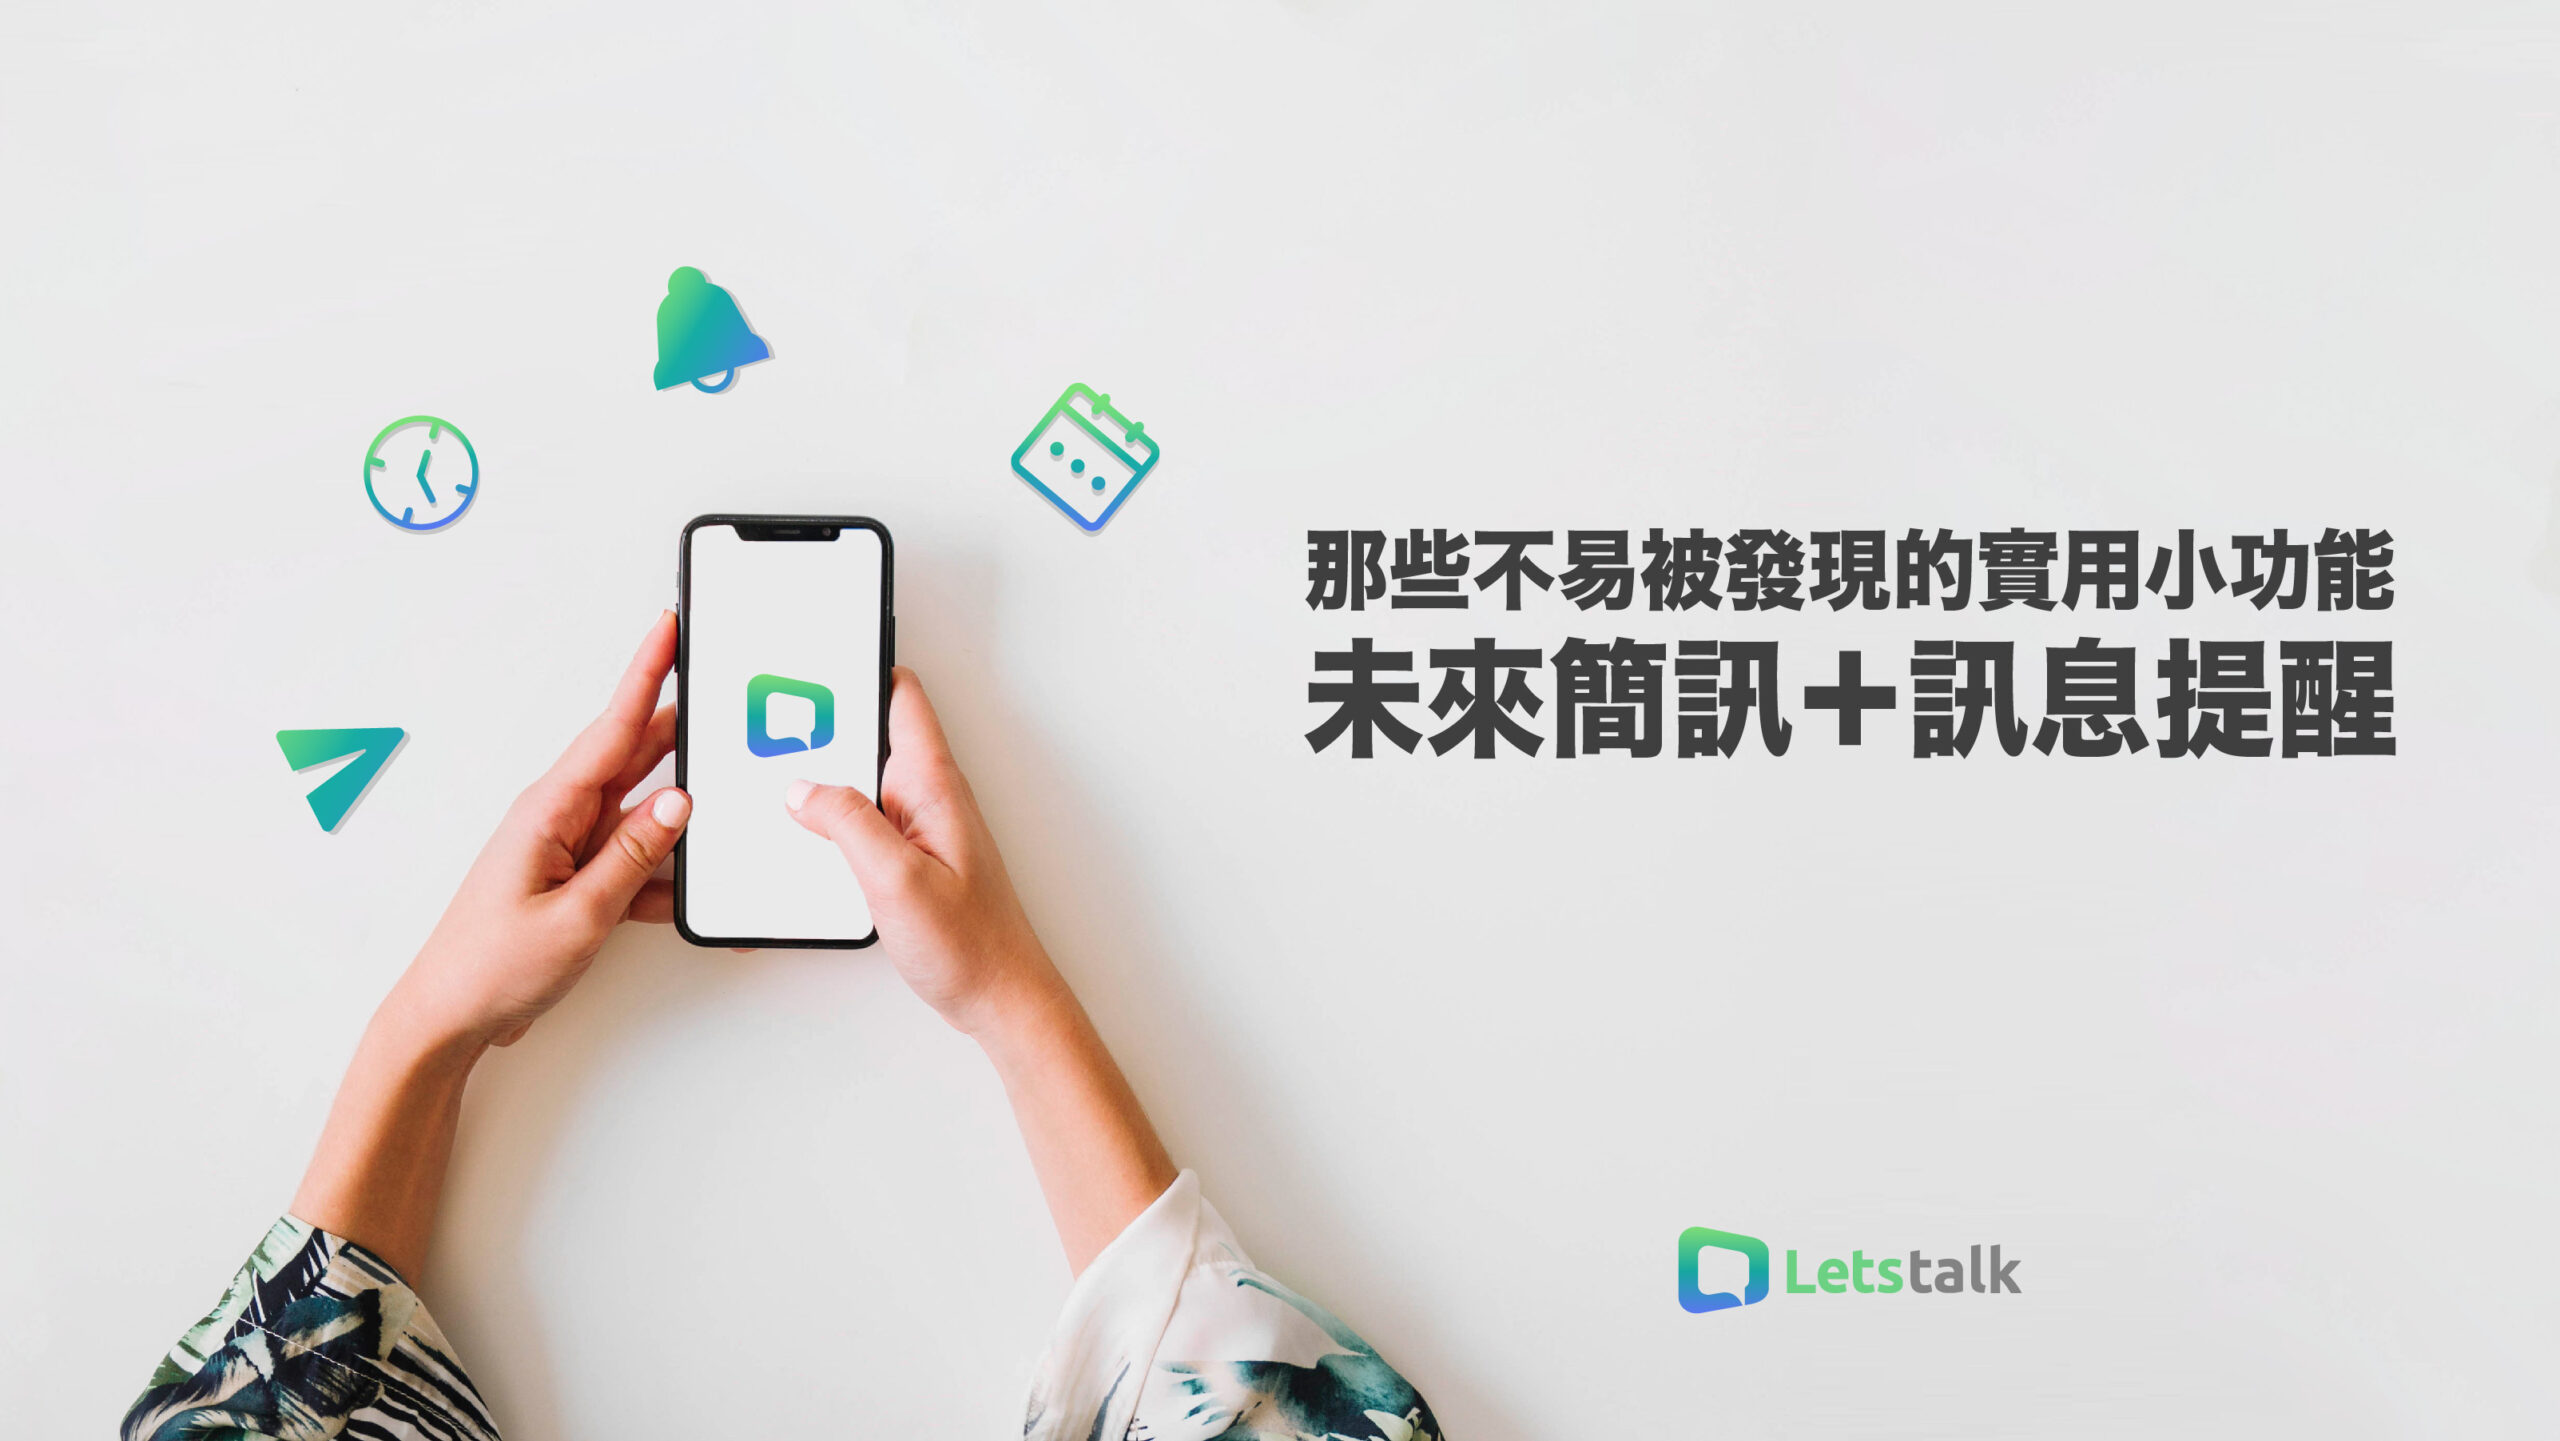 Letstalk官网 那些不易被發現的實用小功能-Letstalk中文官网下载